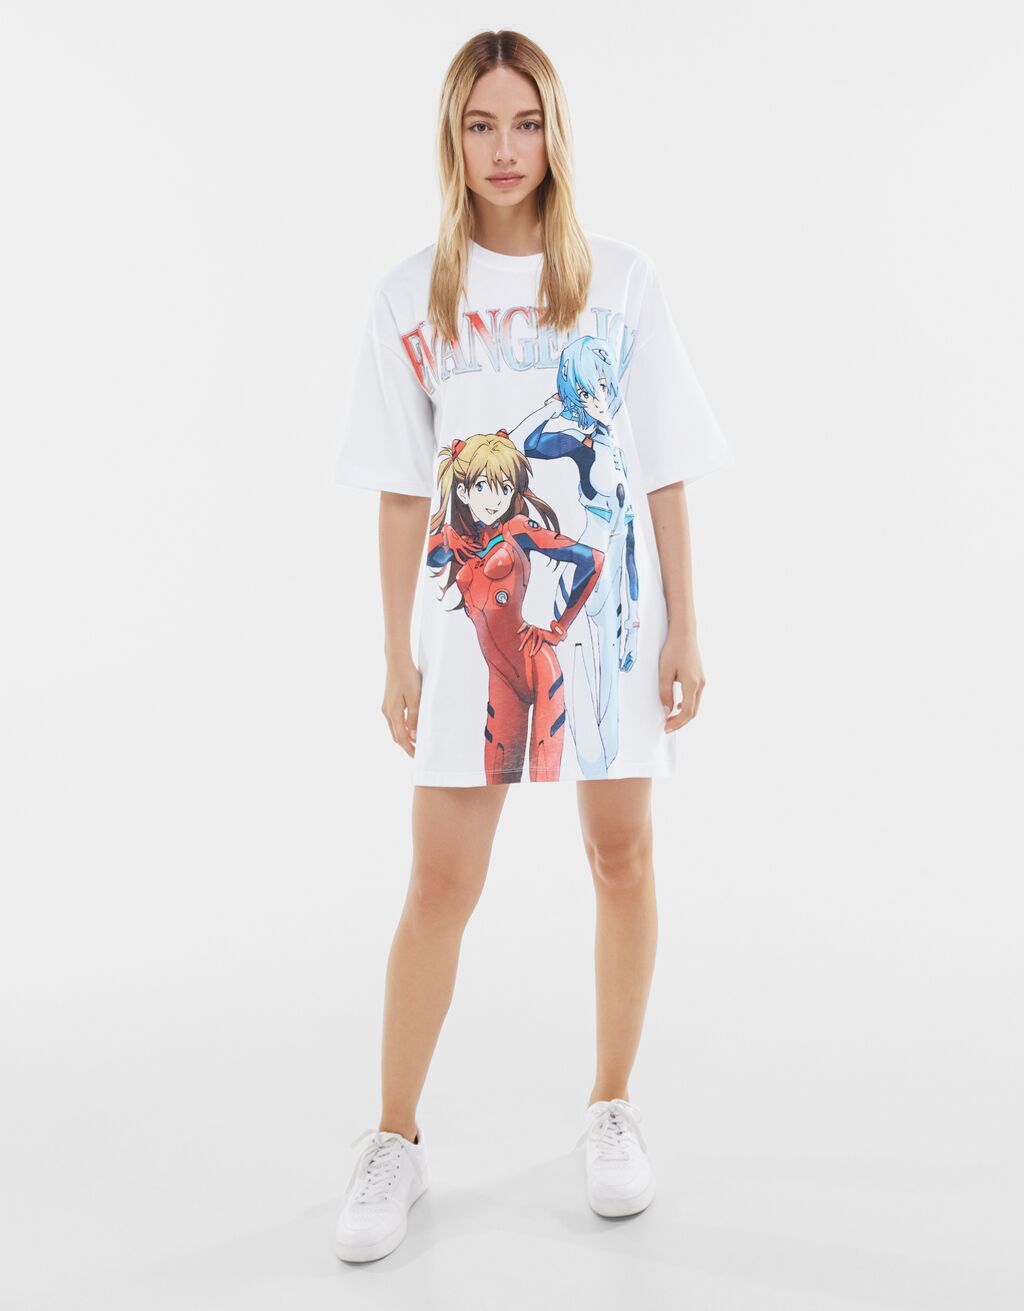 Crunchyroll - Bershka y Evangelion colaboran en una línea de ropa